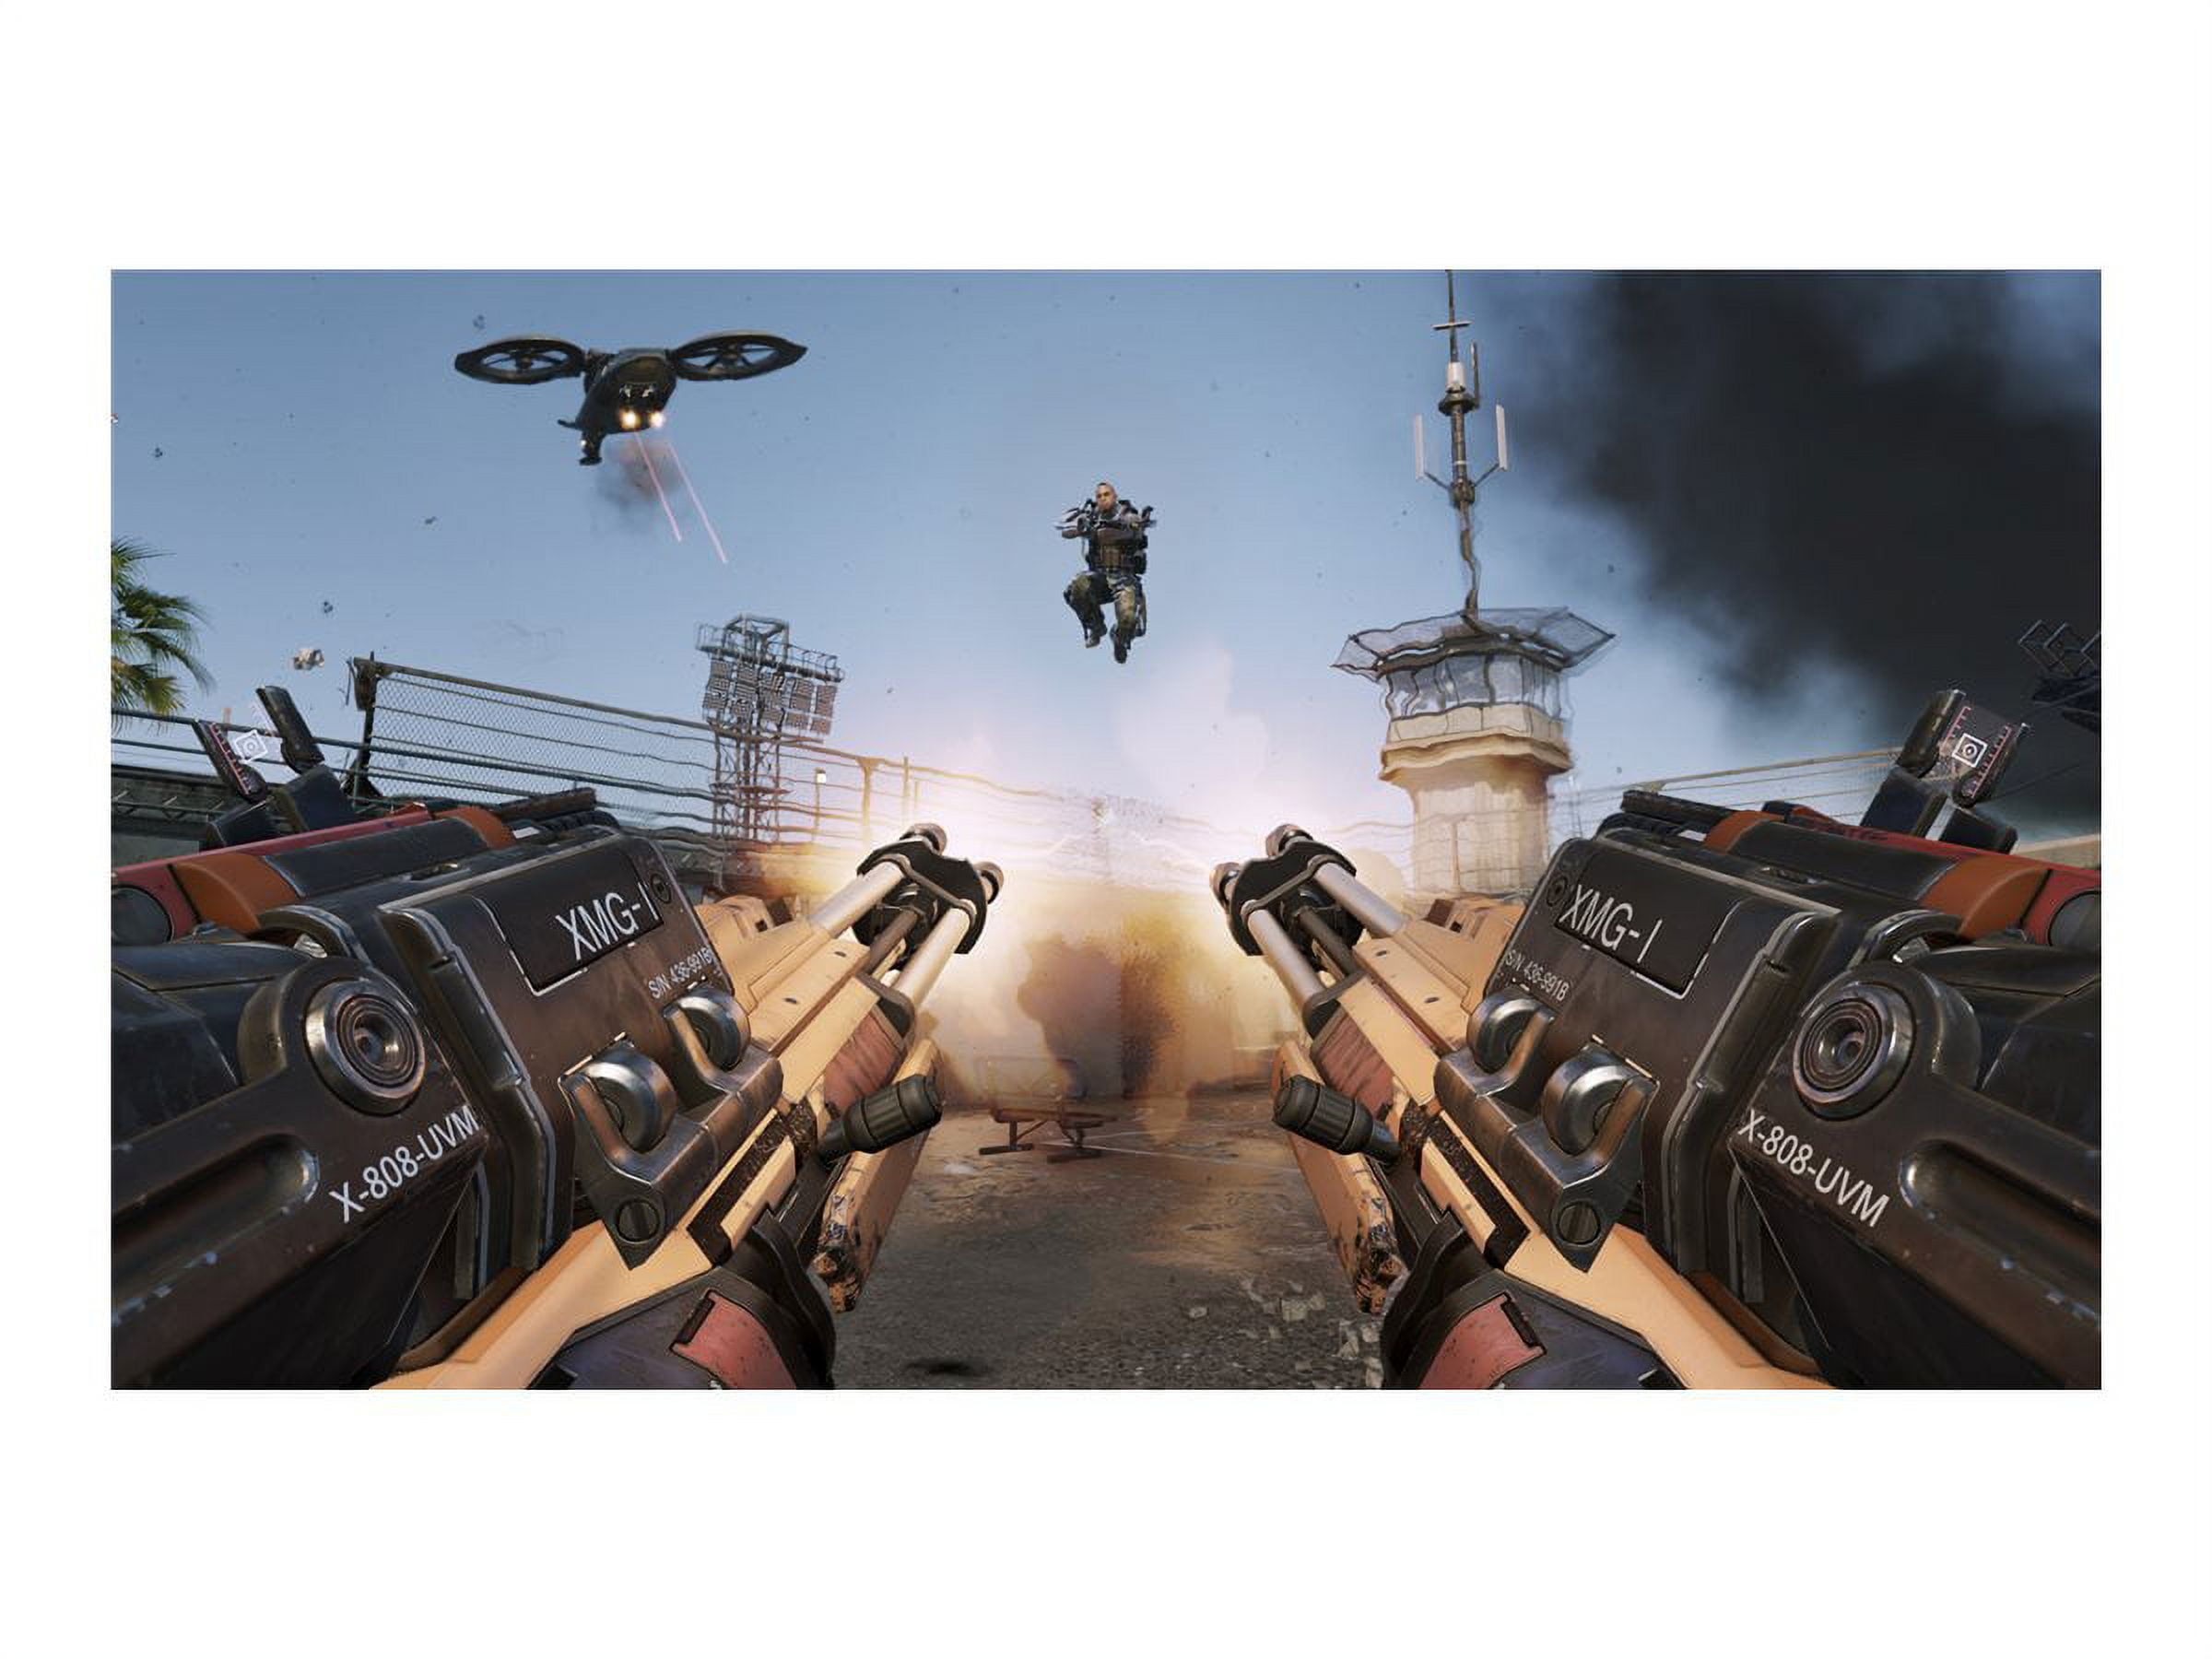 Call of Duty: Advanced Warfare Day Zero Edition Activision Xbox 360 Físico